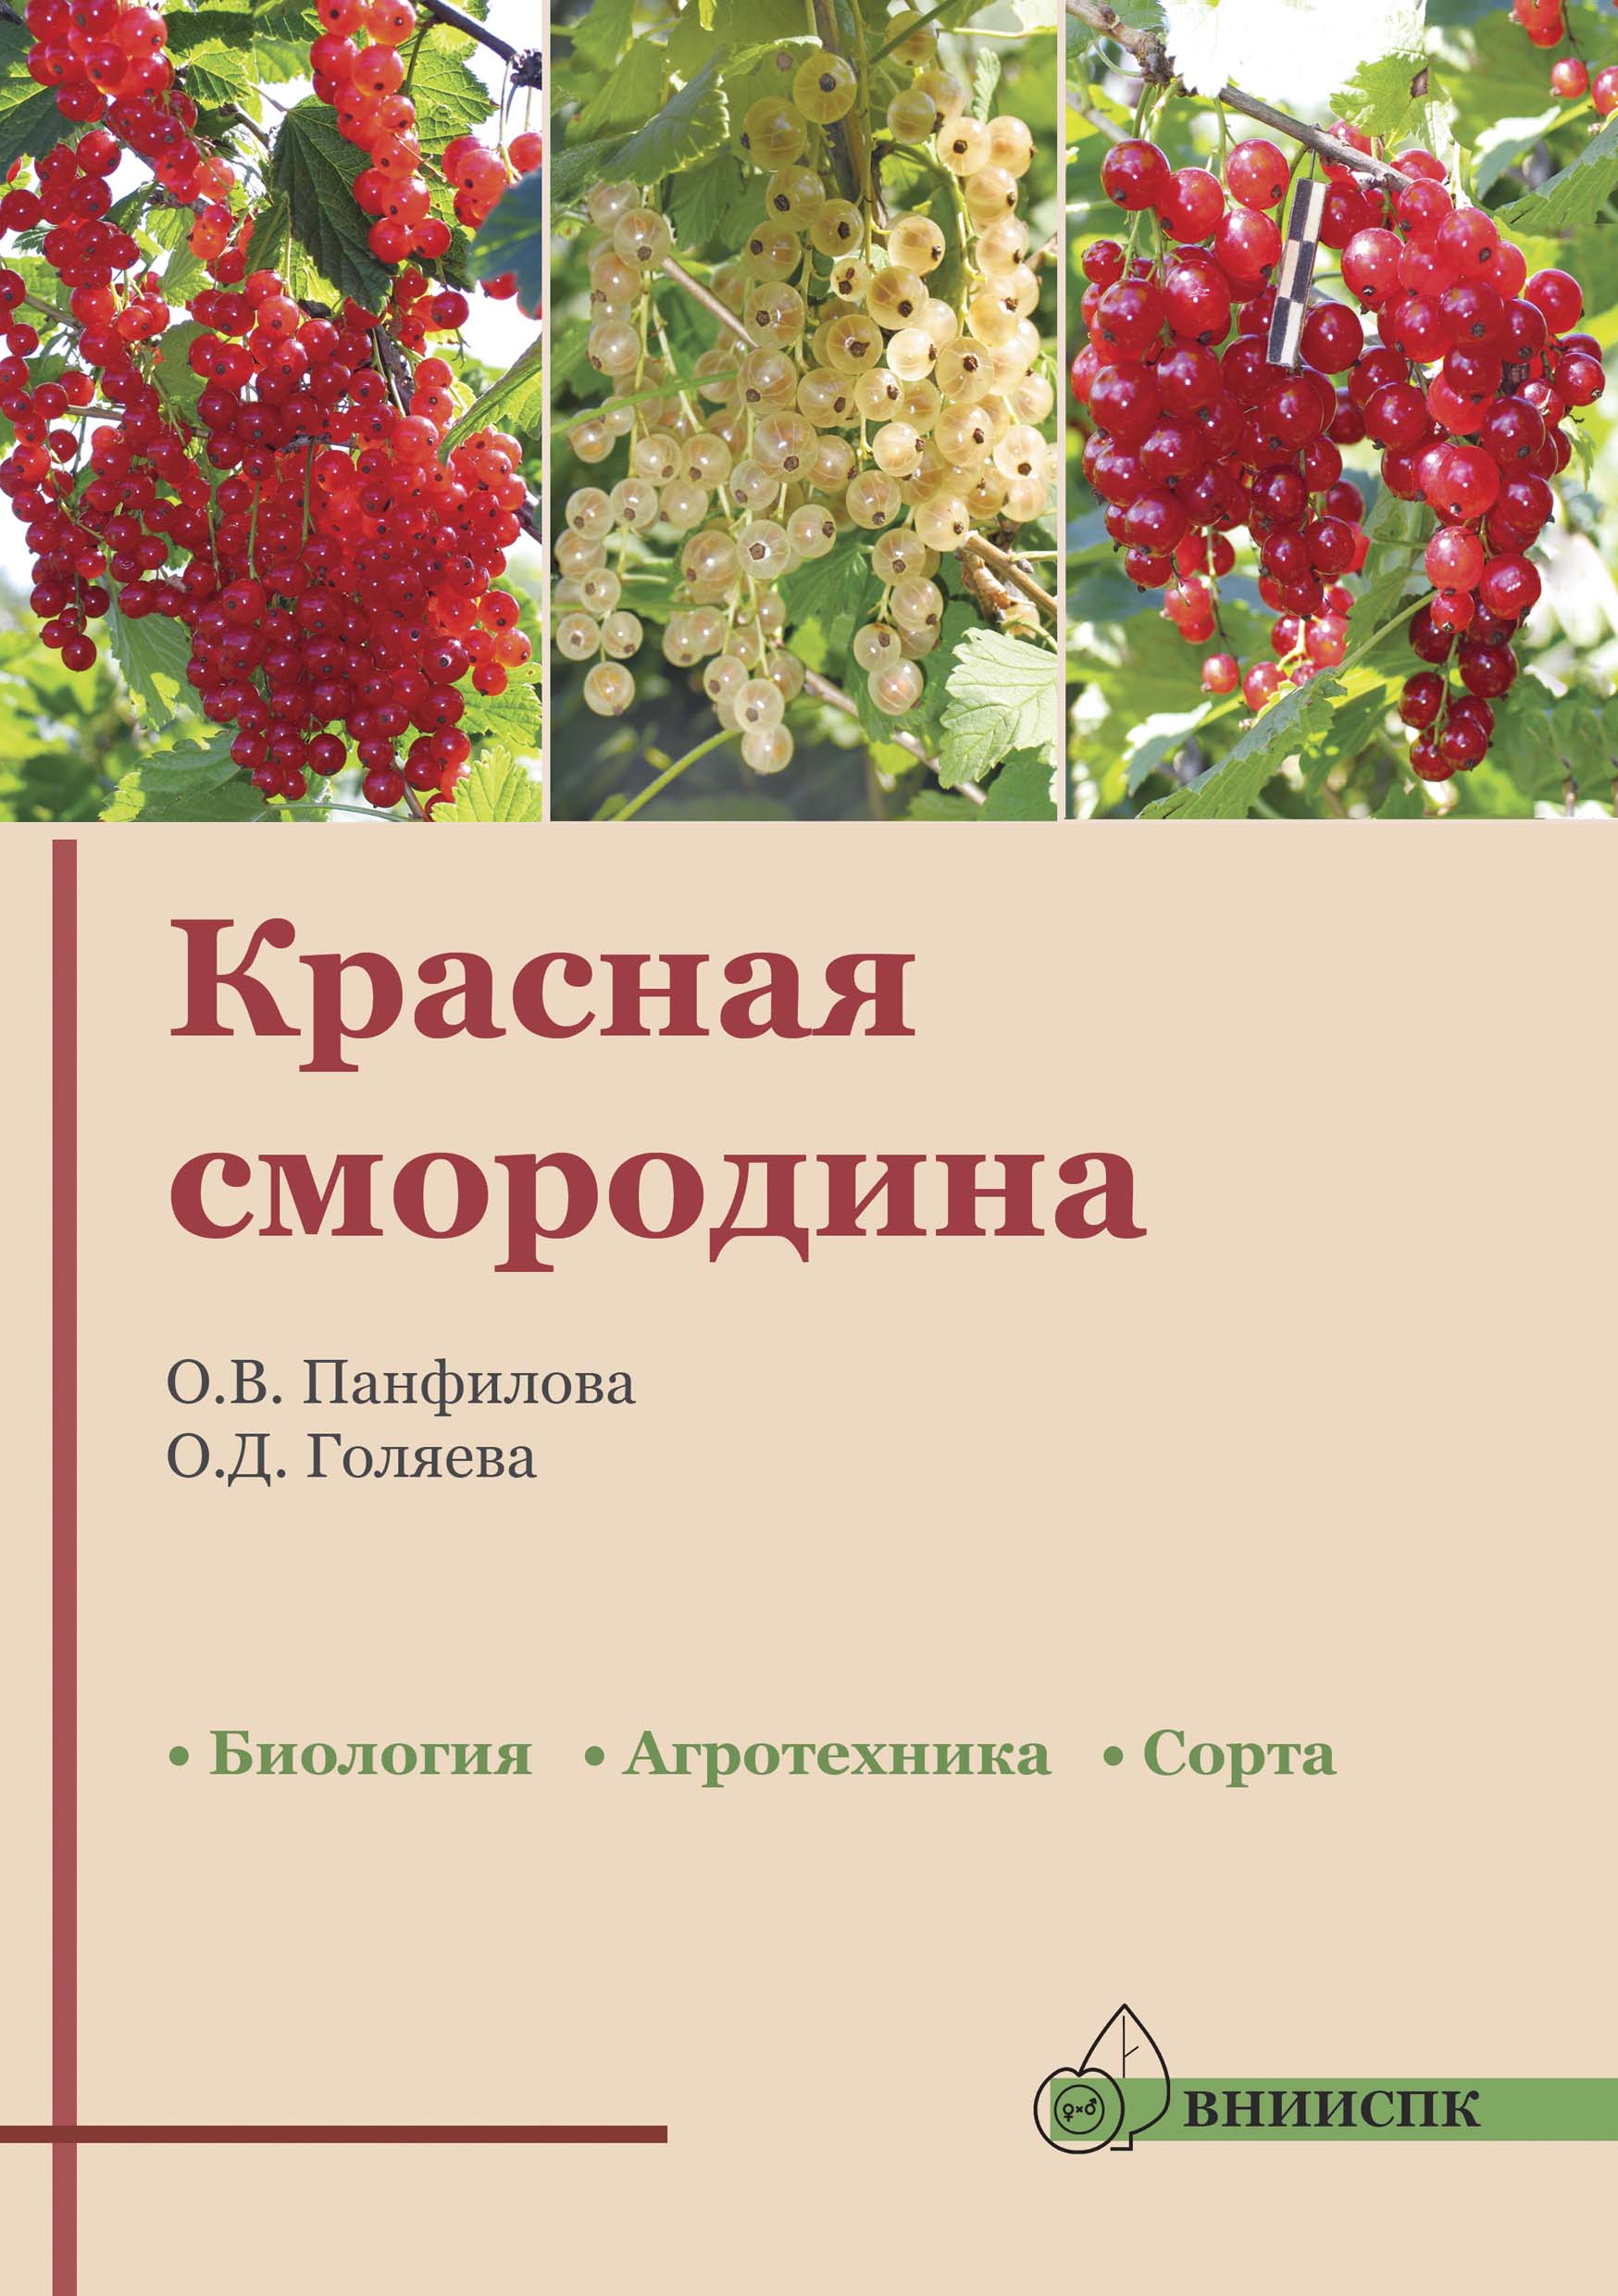 Смородина красная (биология, агротехника, сорта: рекомендации.